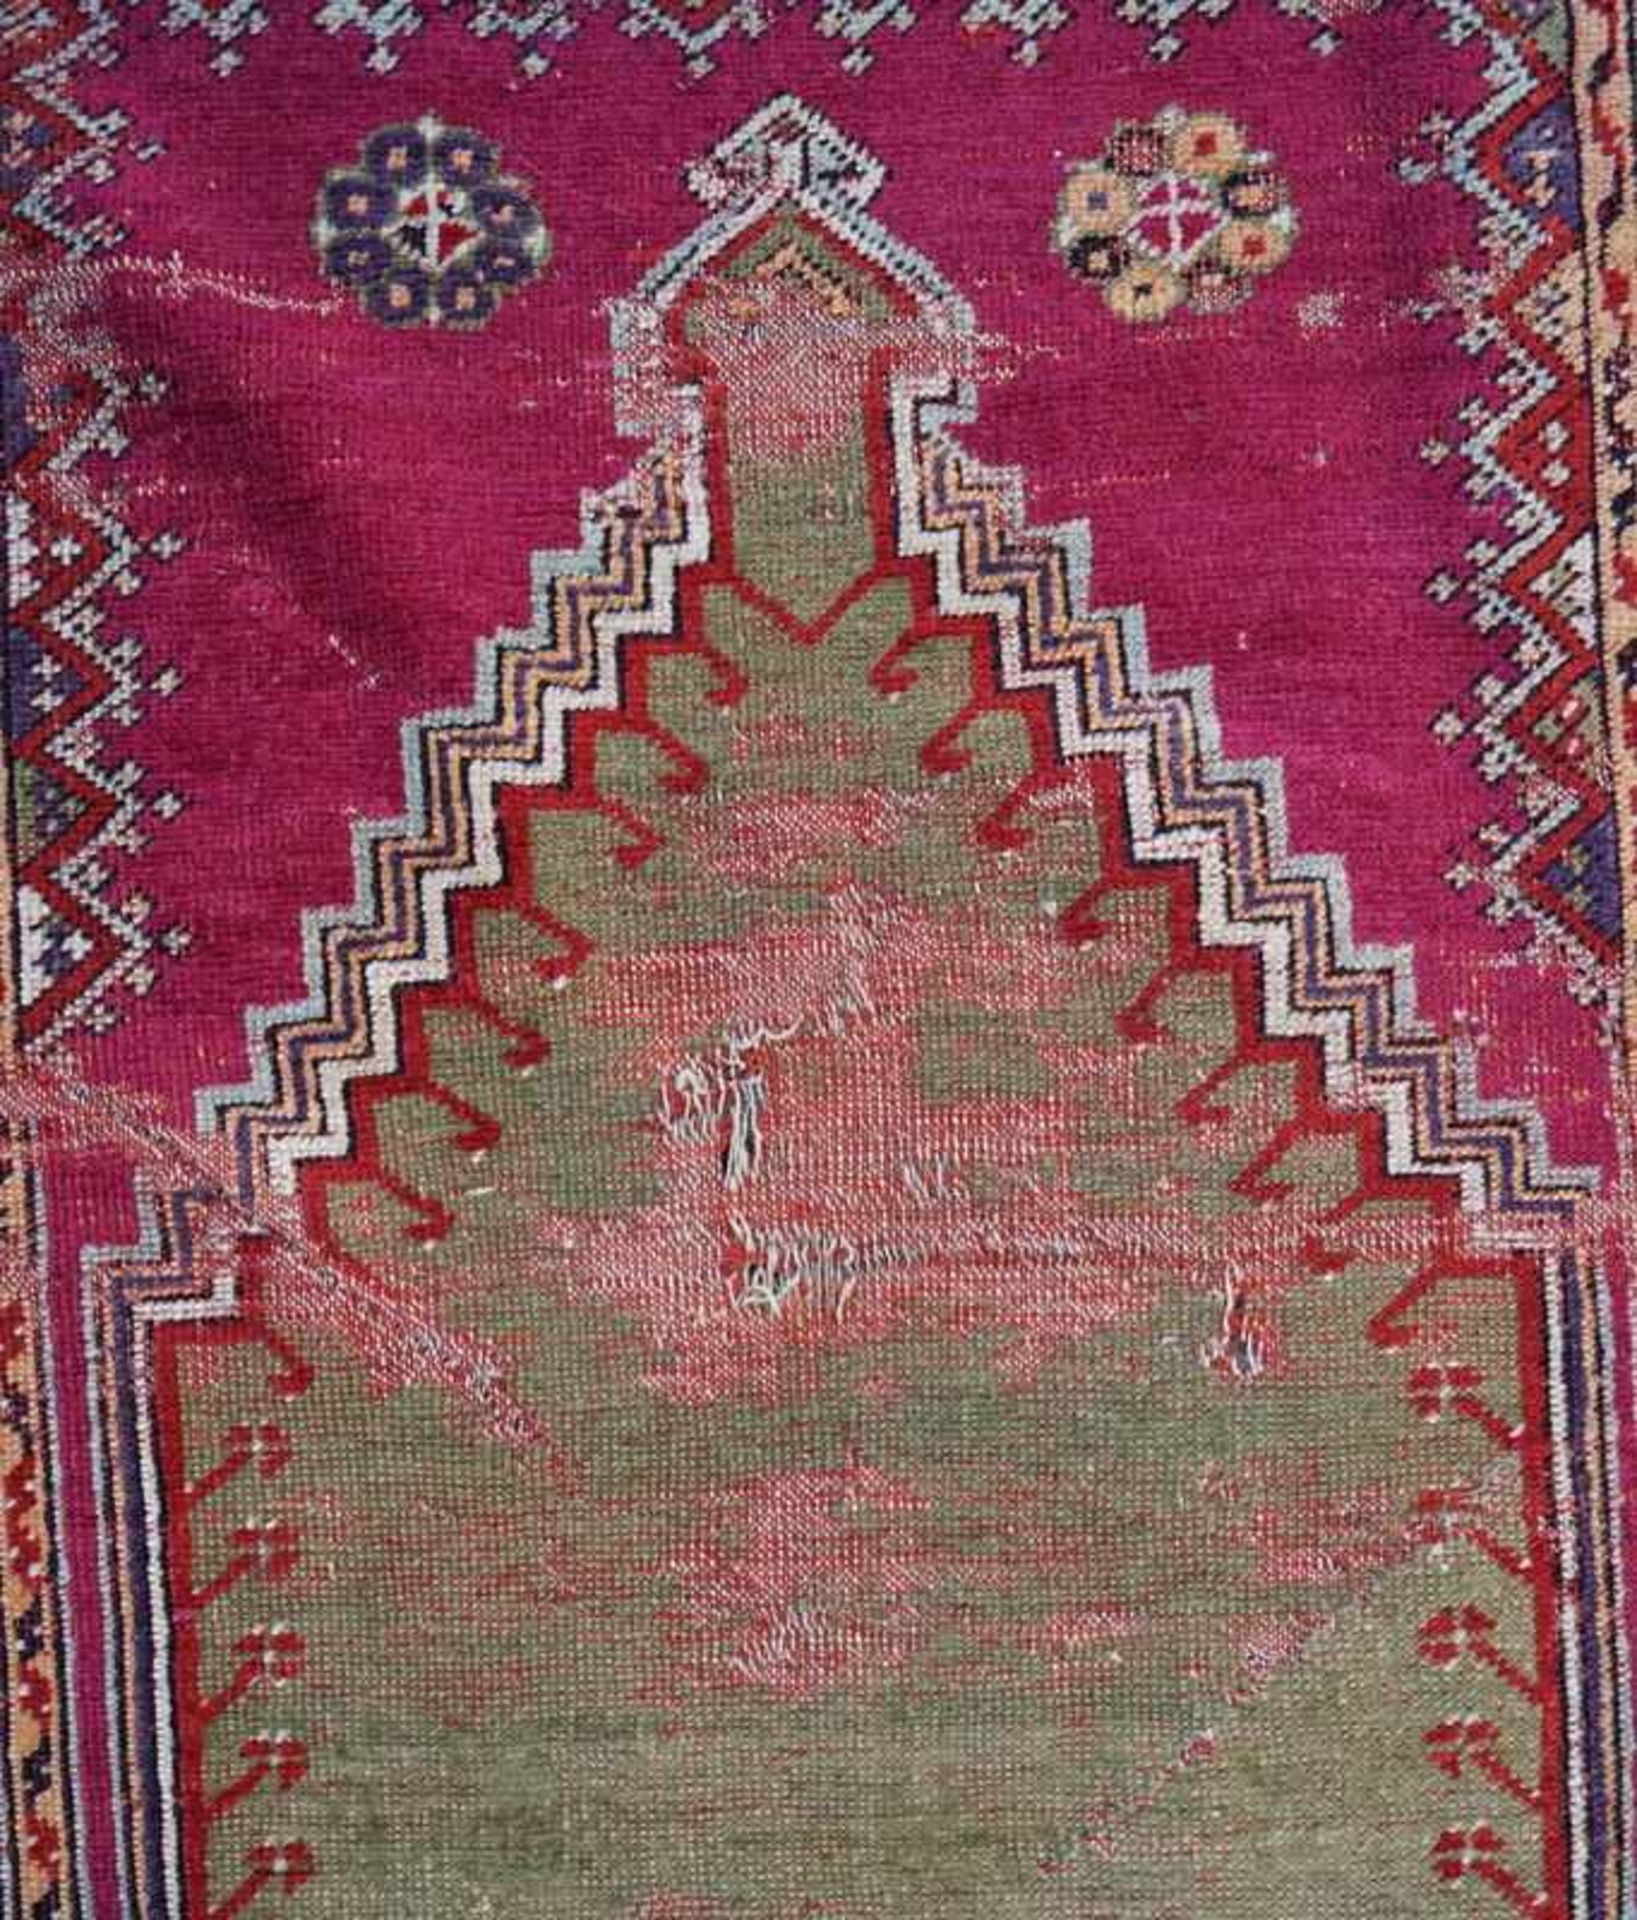 2 Antike Türkische Gebetsteppiche, 19. Jd.Naturfarben, Gebetsniesche mit floralen Ornamenten, - Bild 3 aus 4